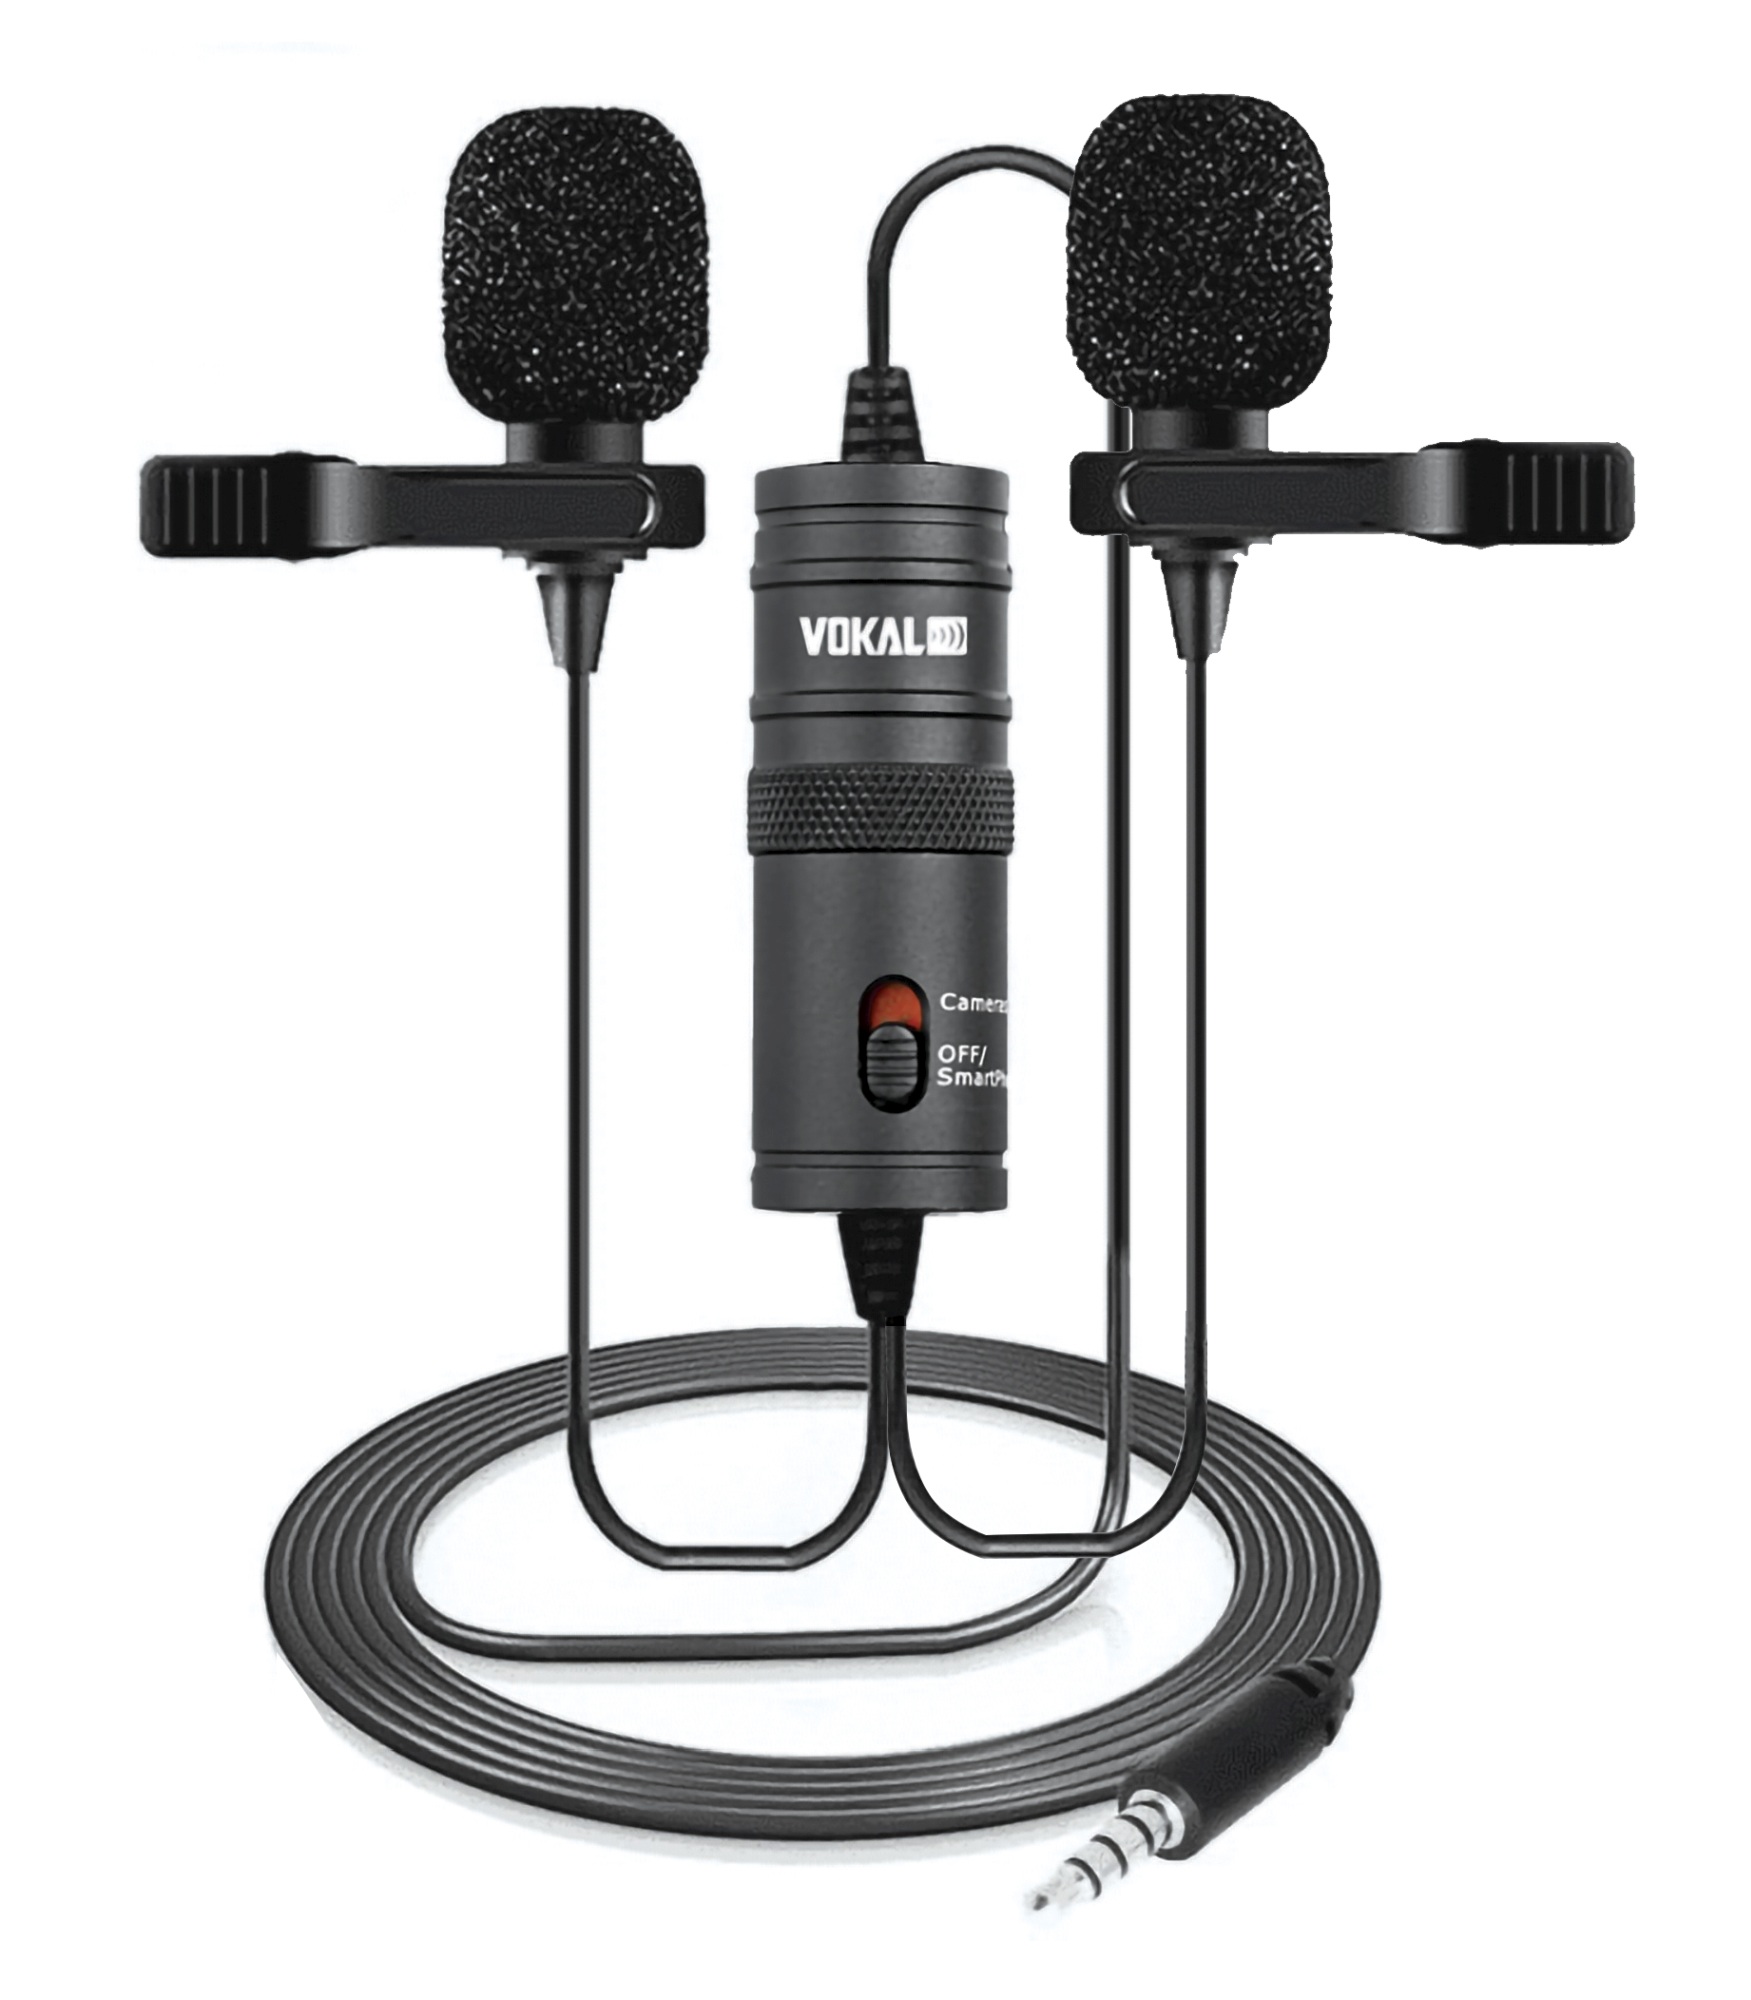 Microfone Vokal Slm20 Lapela Duplo Para smartphone